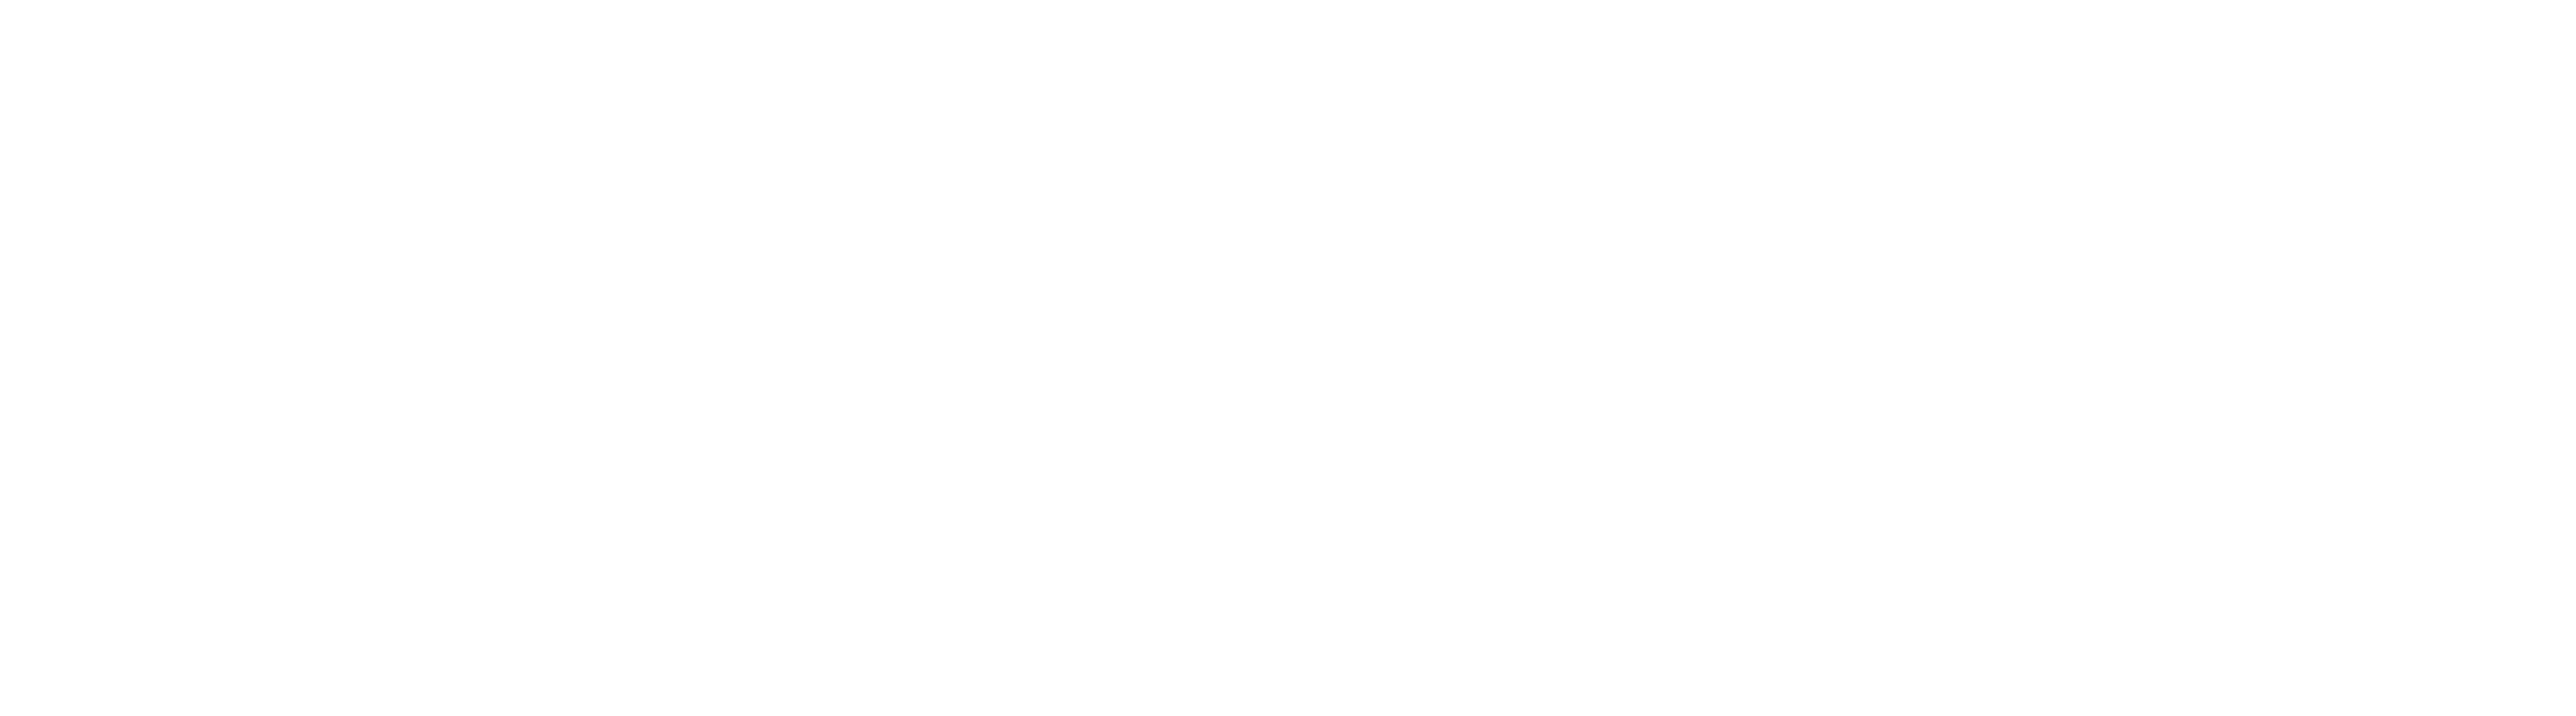 We Need Peace & Love